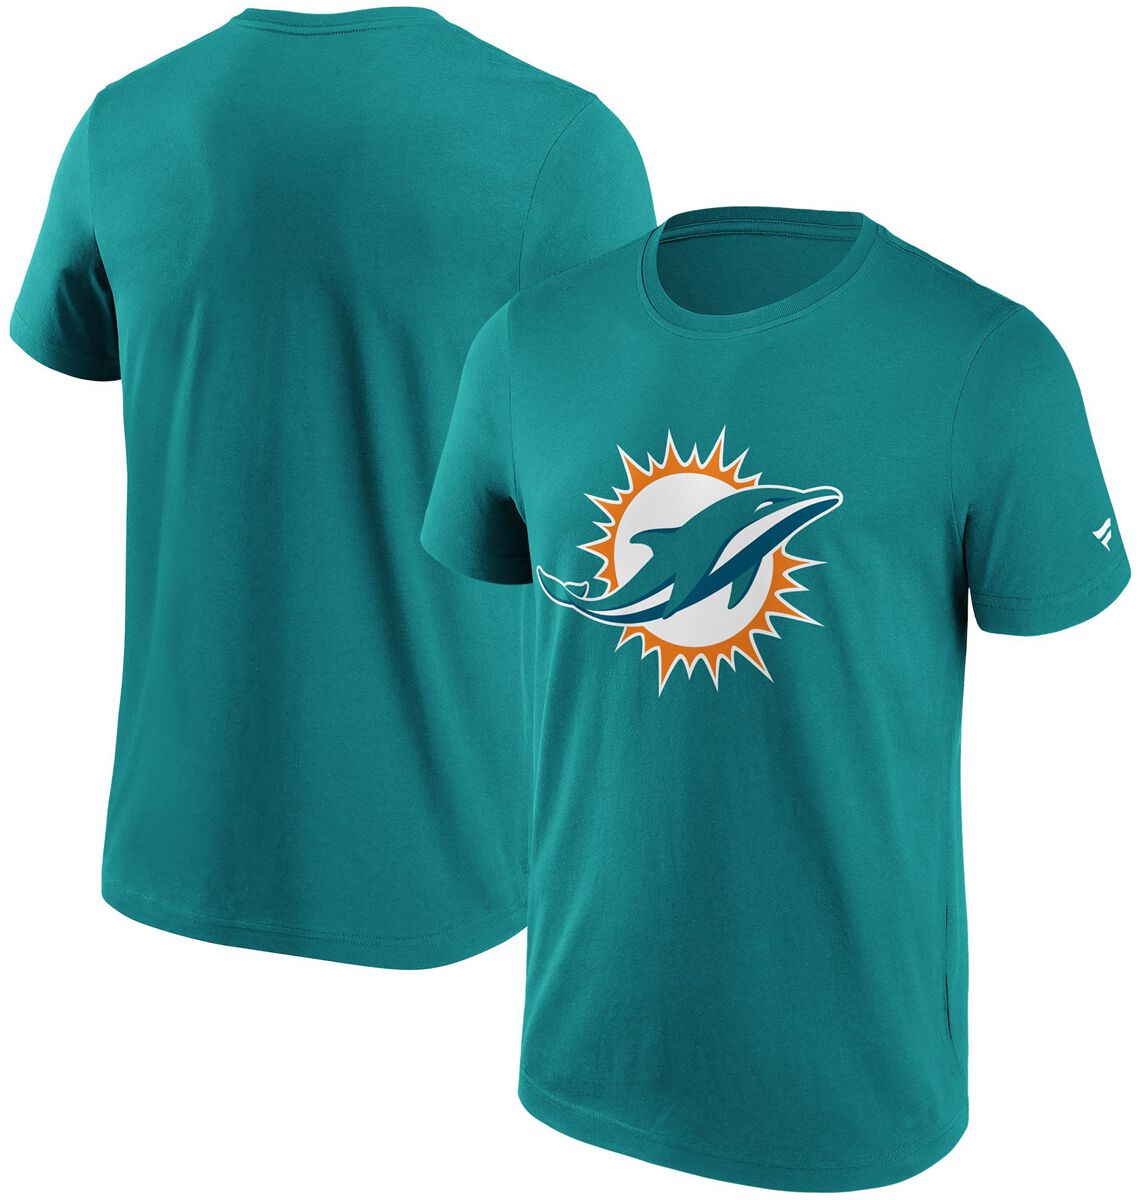 Image of T-Shirt di Fanatics - Miami Dolphins logo - S a M - Uomo - ciano